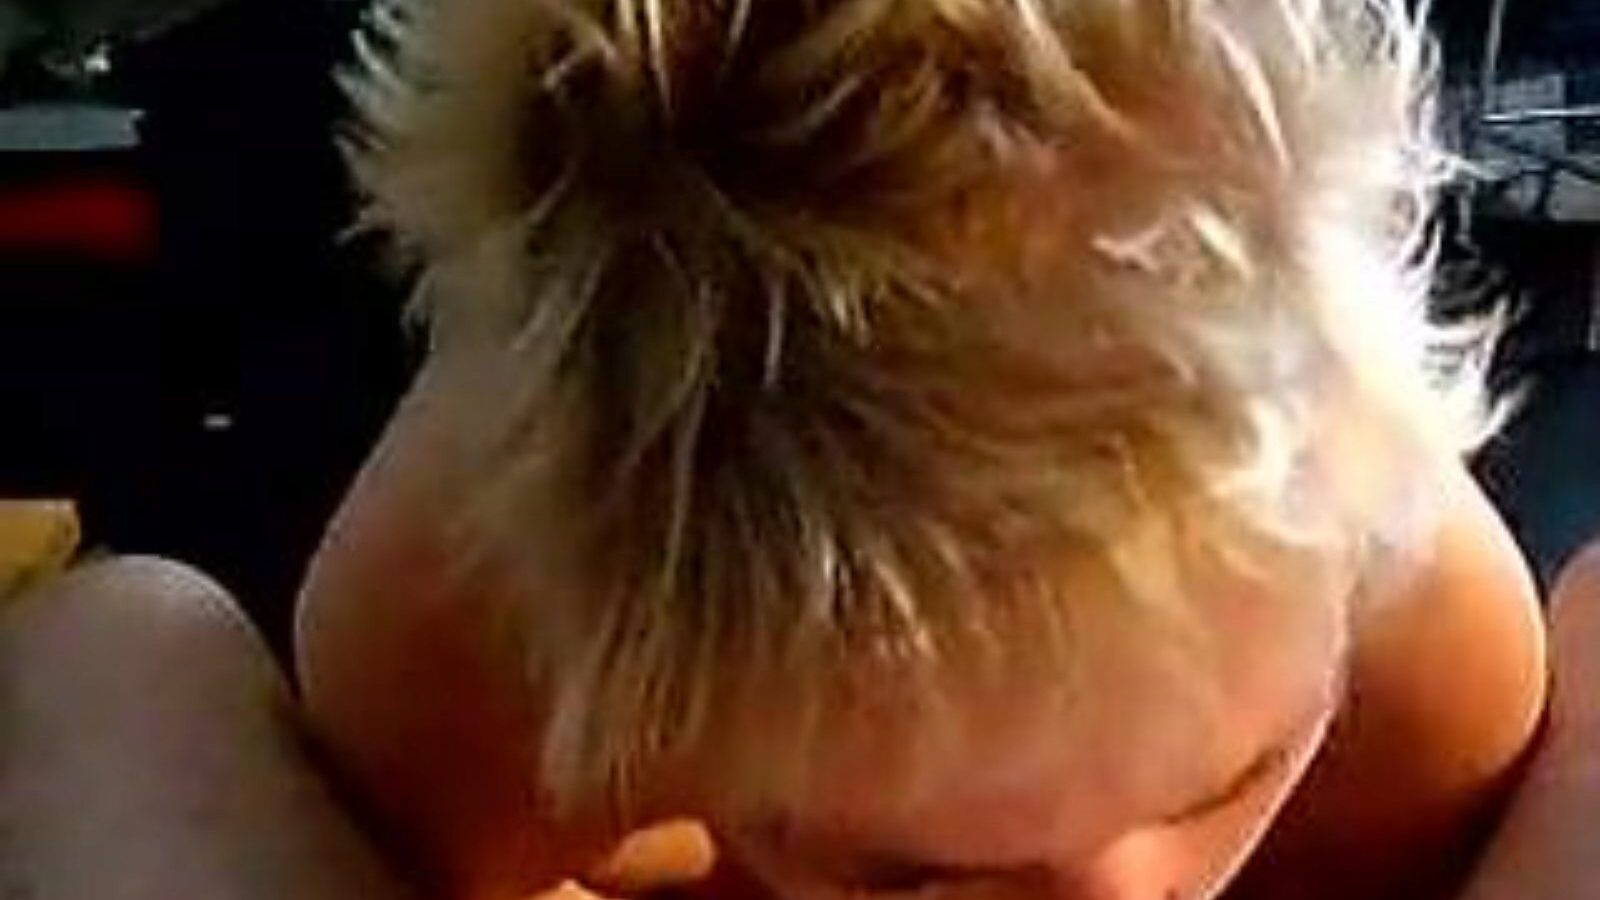 leuke дамочка: домашний и девочка порно видео a6 - xhamster смотреть leuke дама трубки fuckfest кино бесплатно на xhamster для, с самой горячей коллекцией голландских самодельным, девочек и сосущей порнографией клип концерты